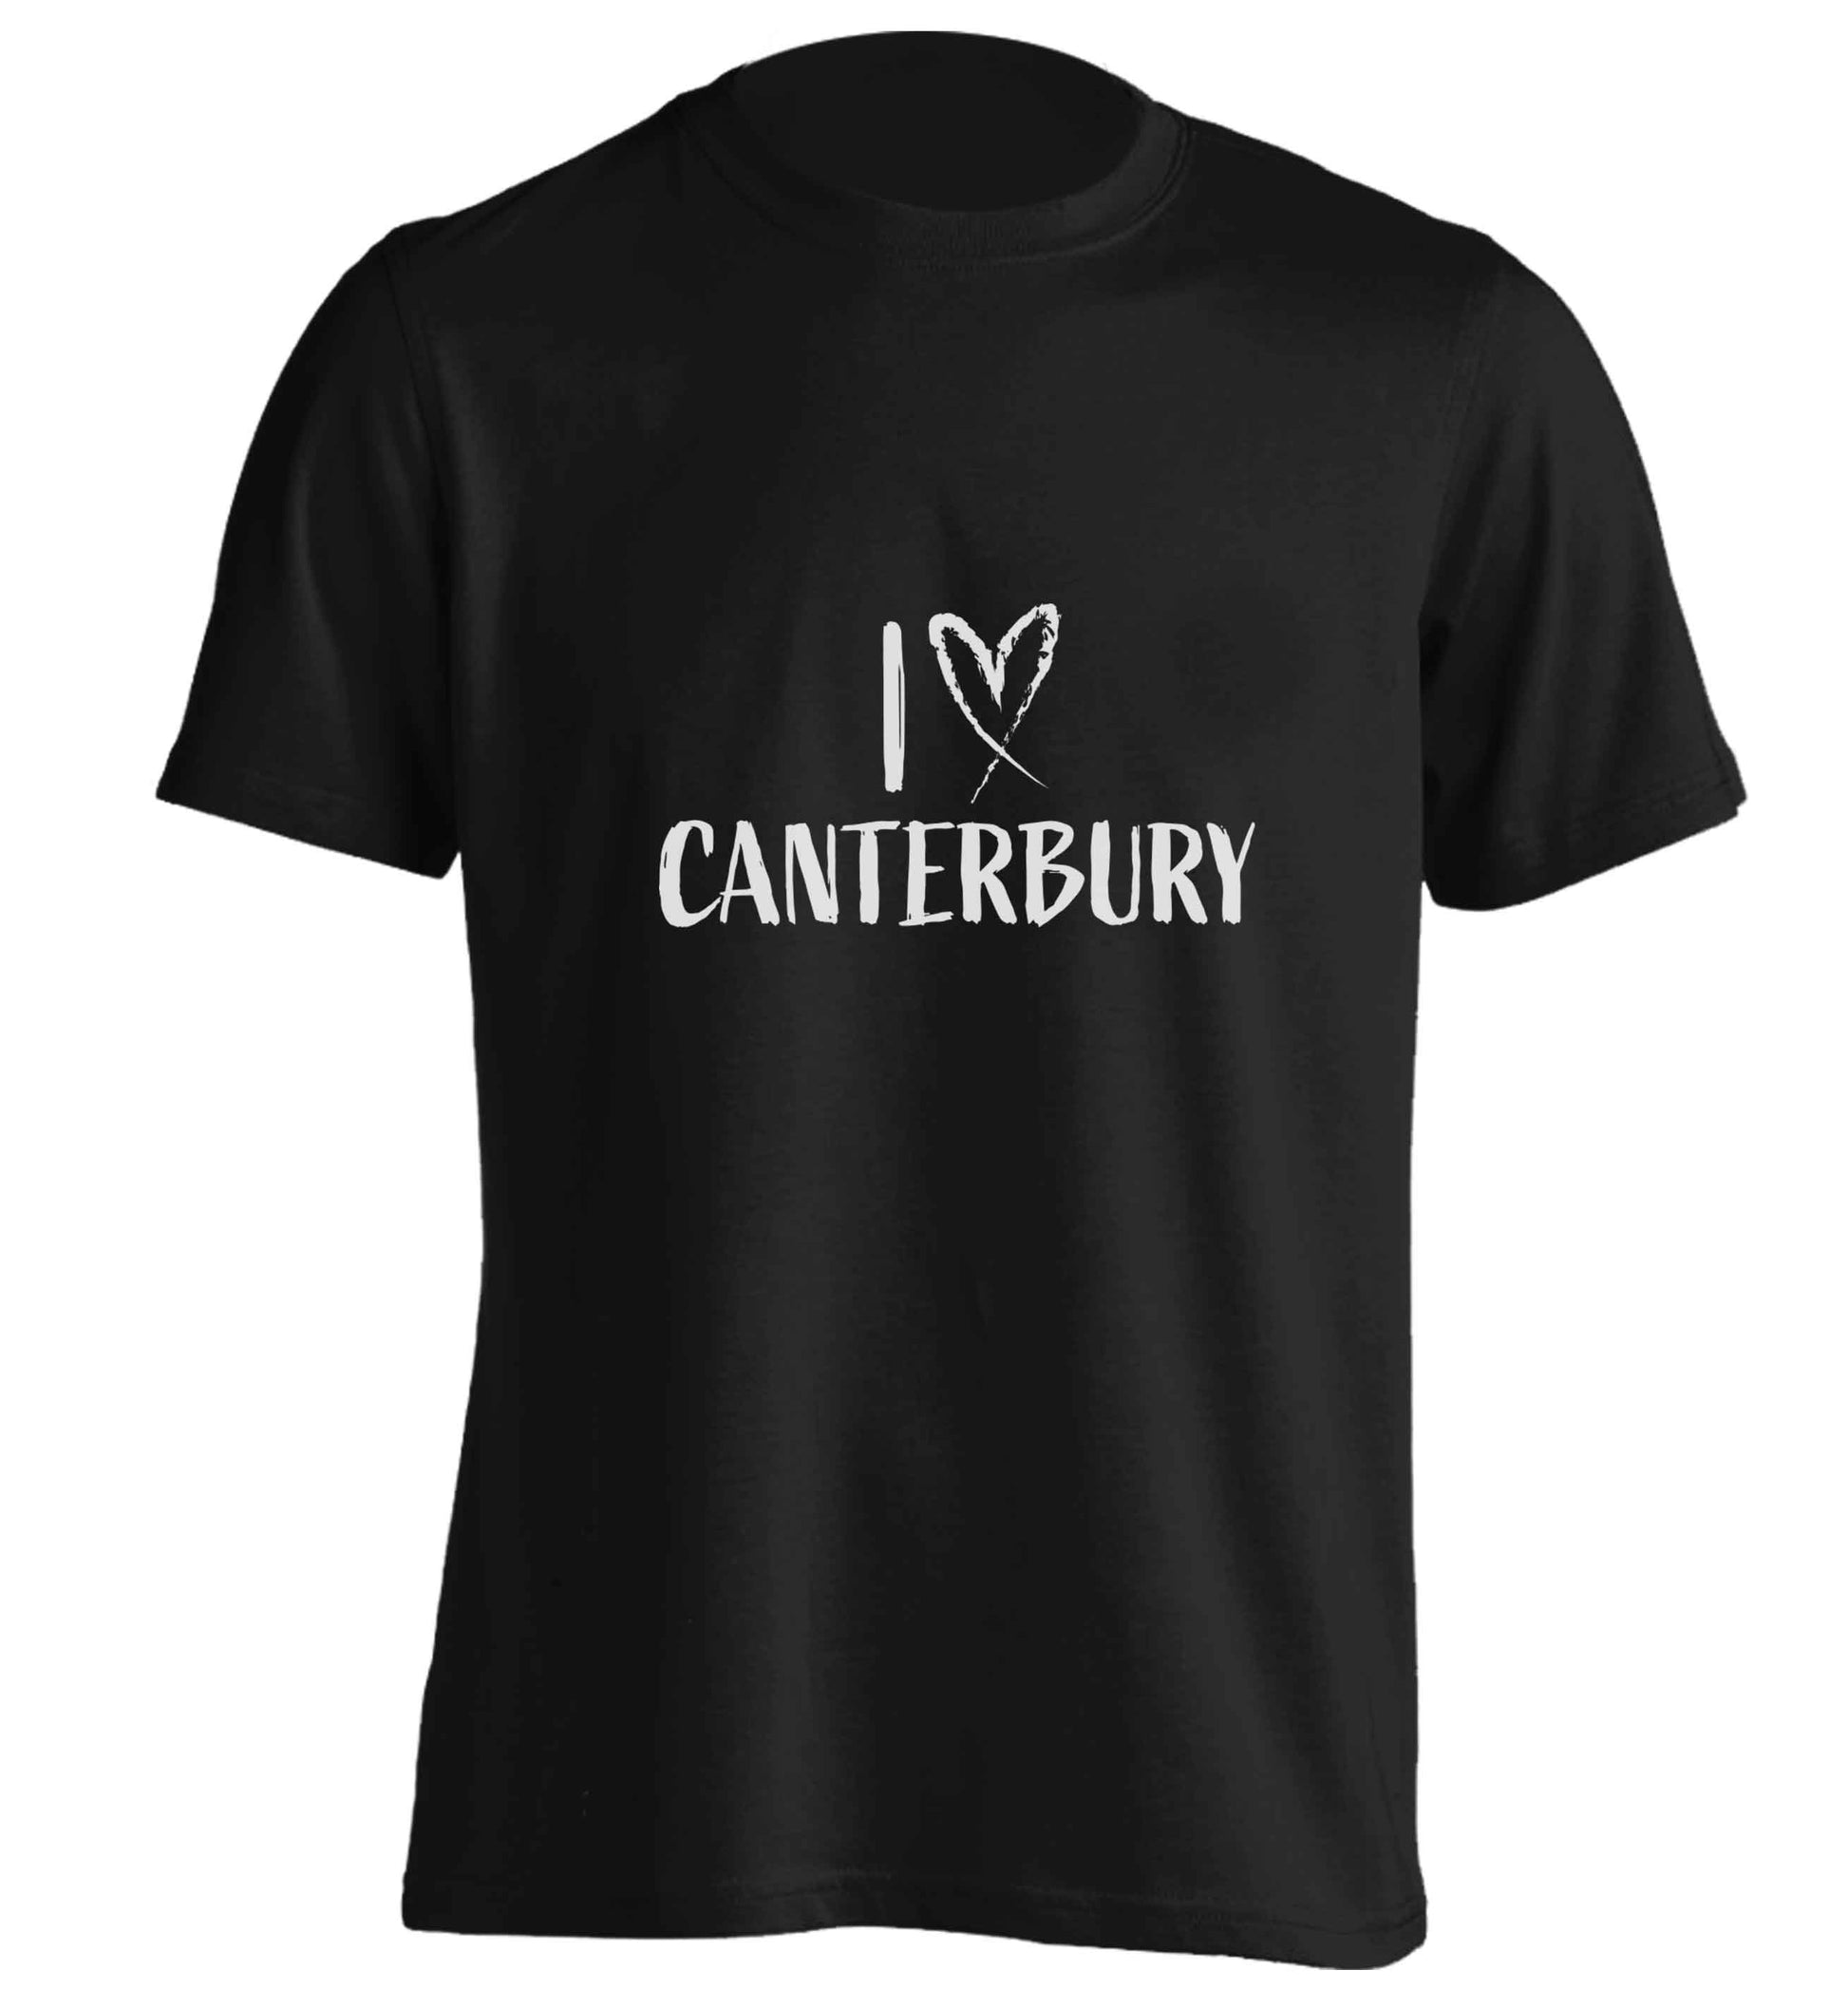 I love Canterbury adults unisex black Tshirt 2XL